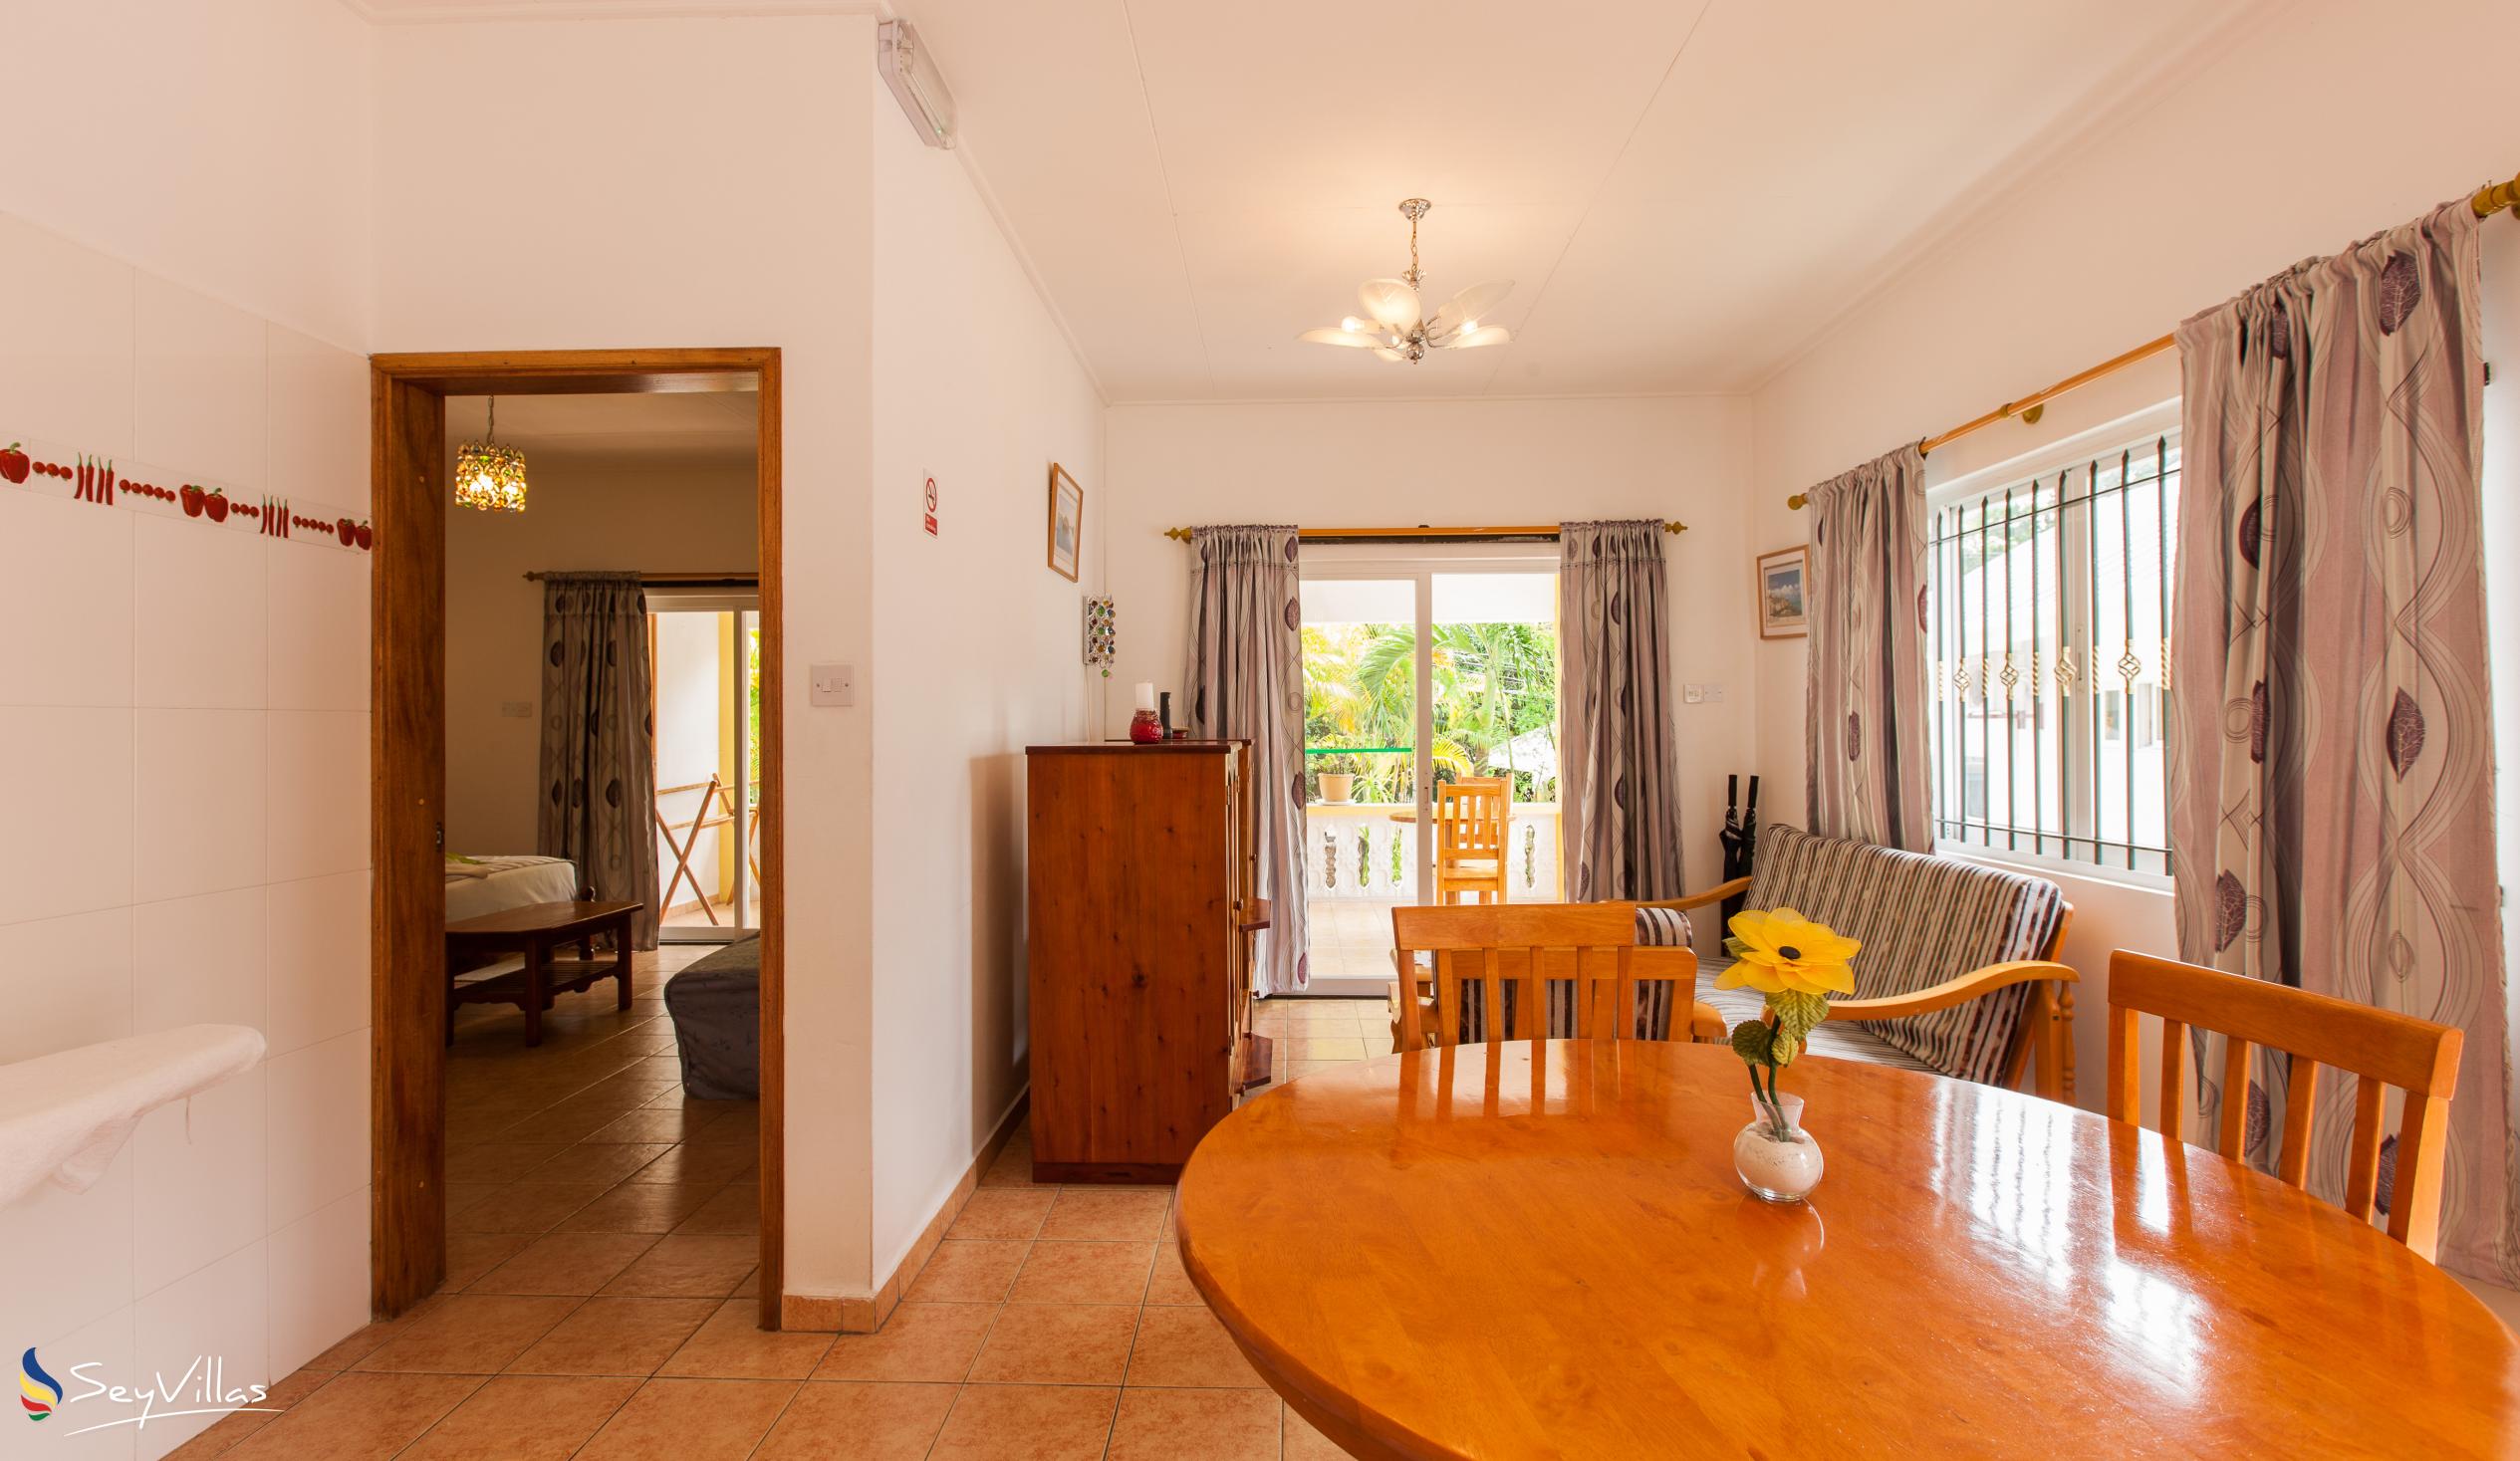 Foto 55: Acquario Villa - Appartement avec 1 chambre - Praslin (Seychelles)